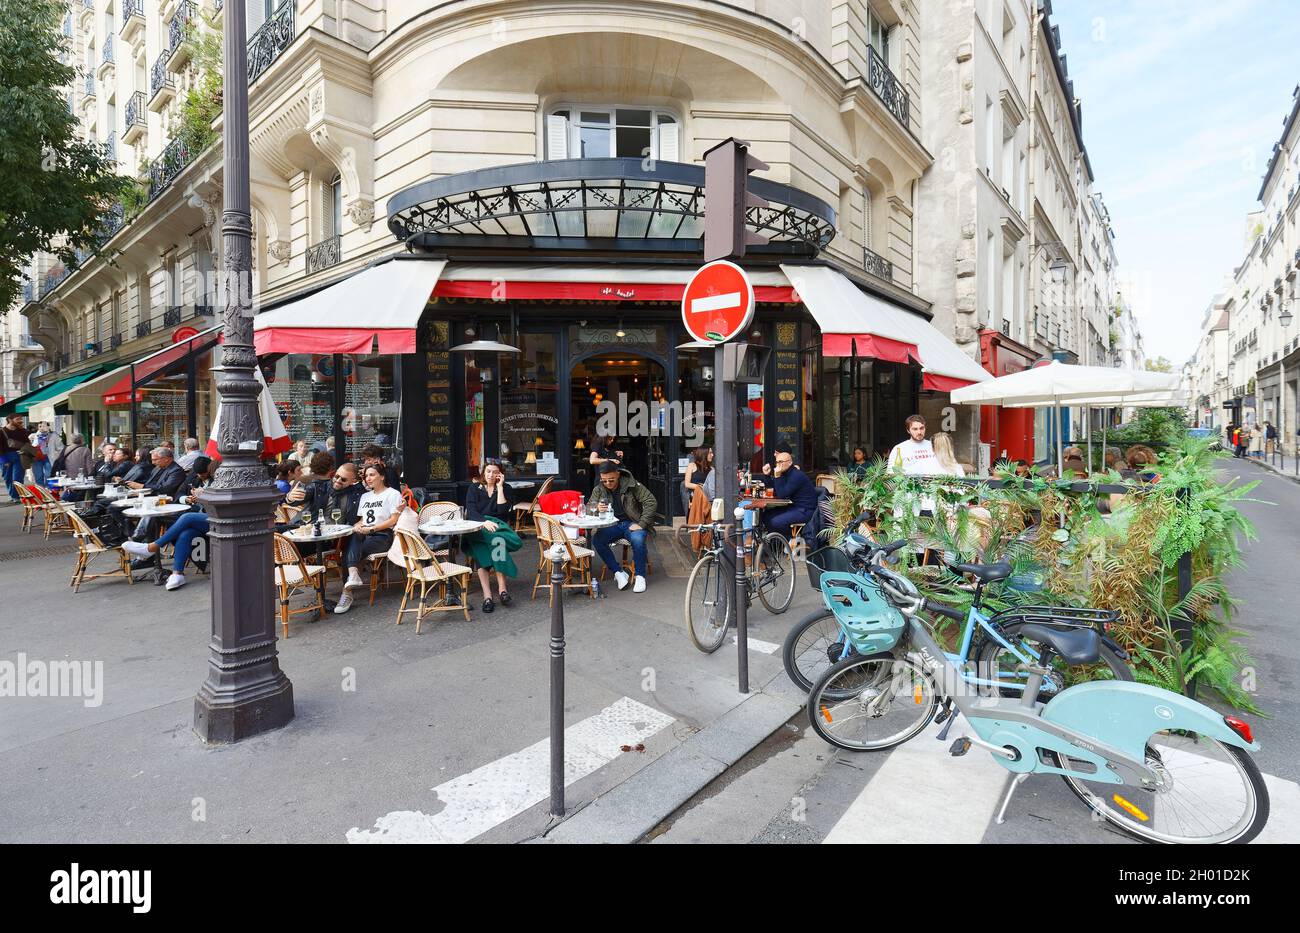 París, Francia-07 de octubre de 2021 : Anteriormente una panadería, el Cafe Charlot fue convertido en un bistro típicamente parisino. Está situado en el distrito de Marais Foto de stock